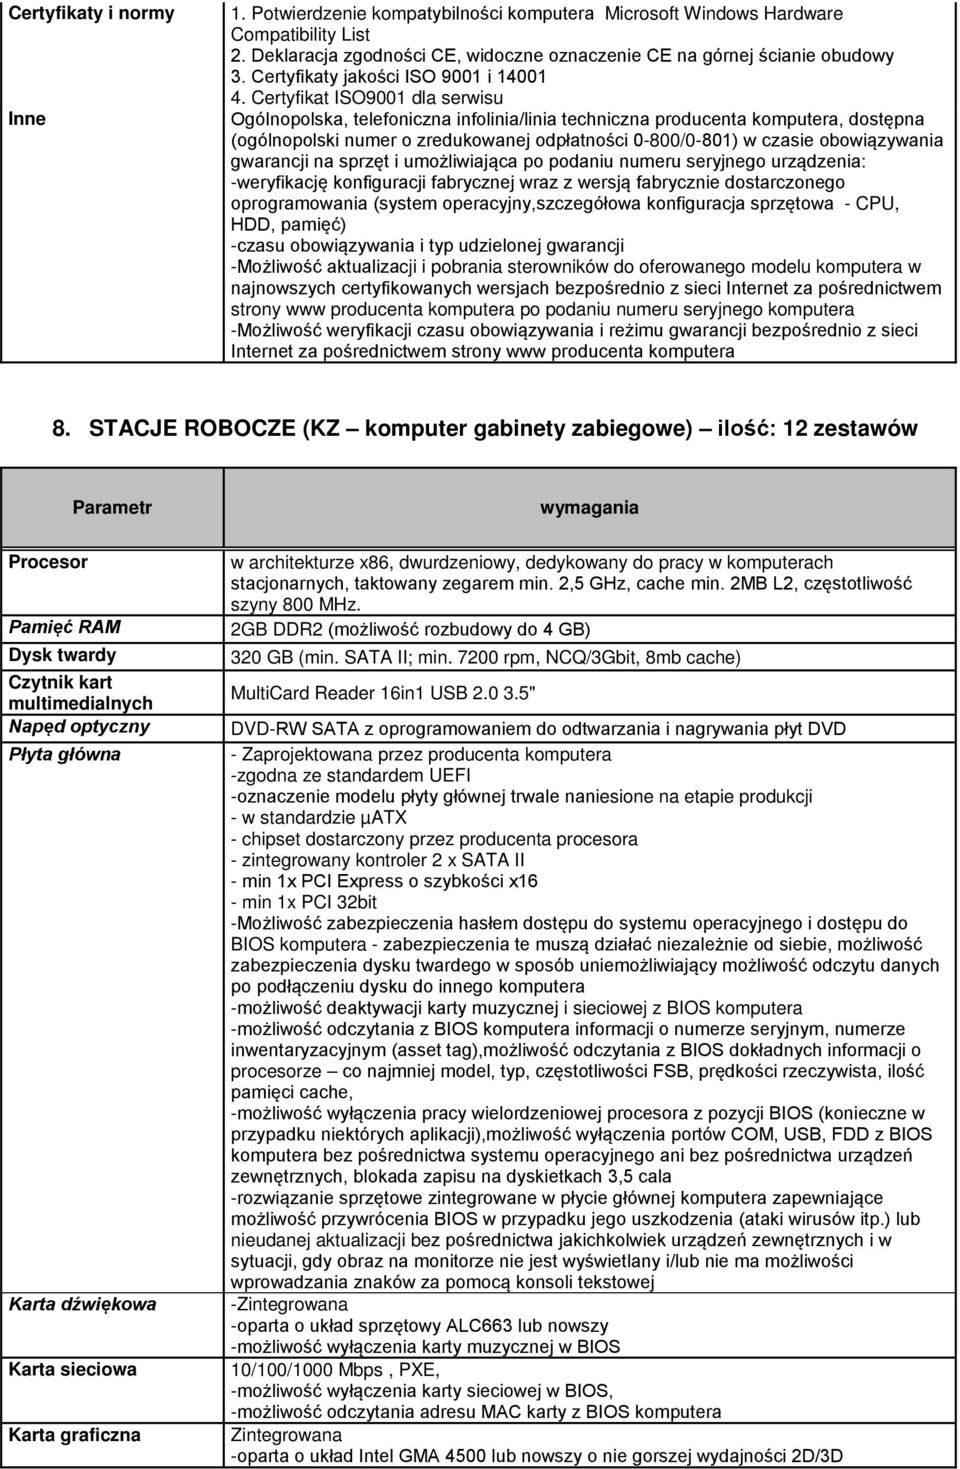 Certyfikat ISO9001 dla serwisu Ogólnopolska, telefoniczna infolinia/linia techniczna producenta komputera, dostępna (ogólnopolski numer o zredukowanej odpłatności 0-800/0-801) w czasie obowiązywania